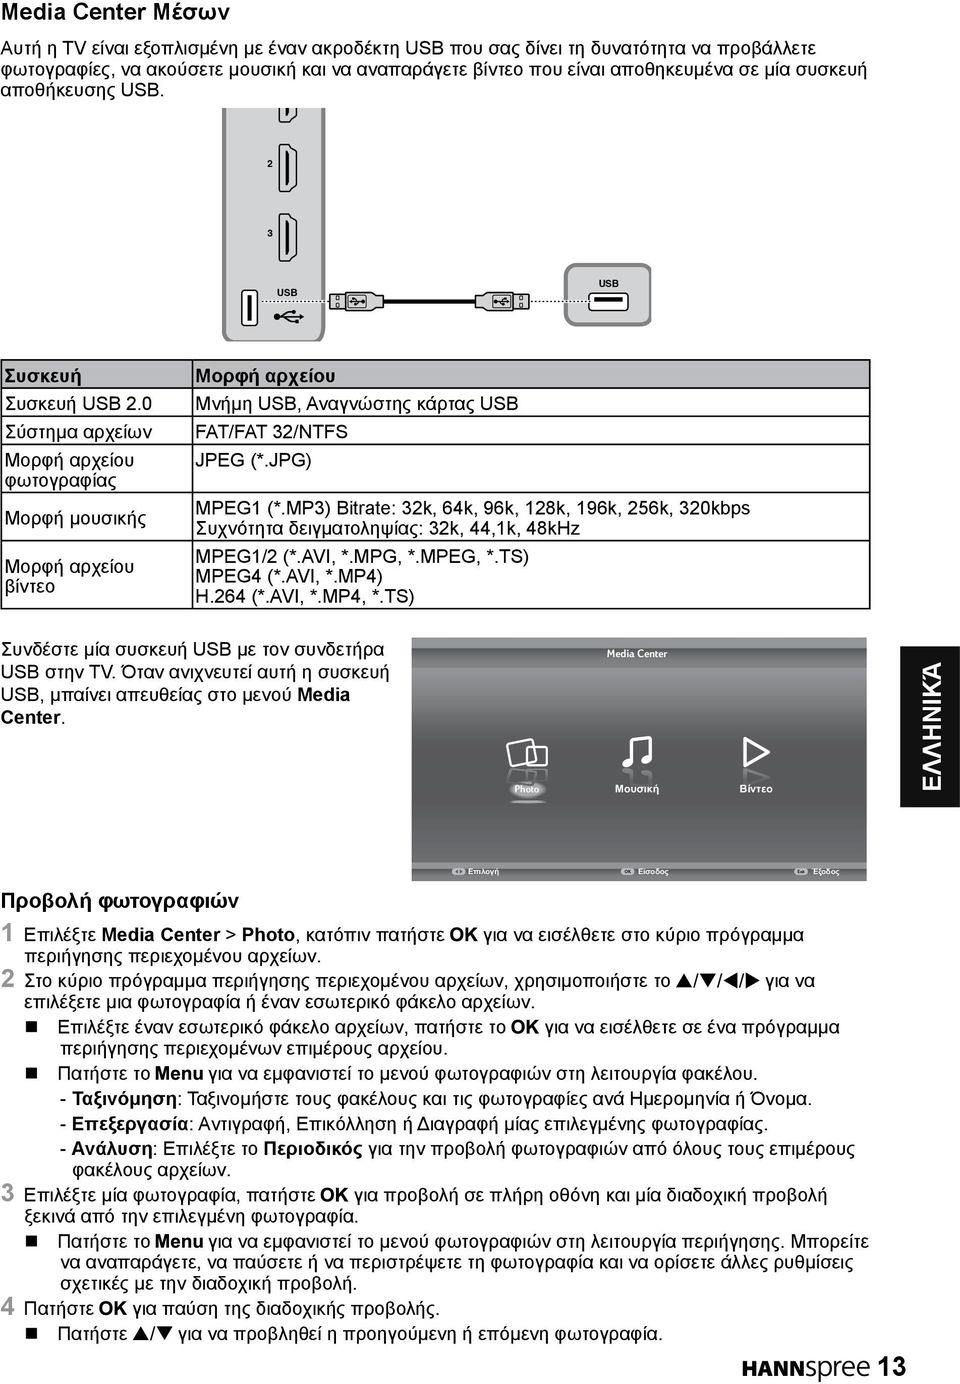 0 Σύστημα αρχείων Μορφή αρχείου φωτογραφίας Μορφή μουσικής Μορφή αρχείου βίντεο Μορφή αρχείου Μνήμη USB, Αναγνώστης κάρτας USB FAT/FAT /NTFS JPEG (*.JPG) MPEG (*.